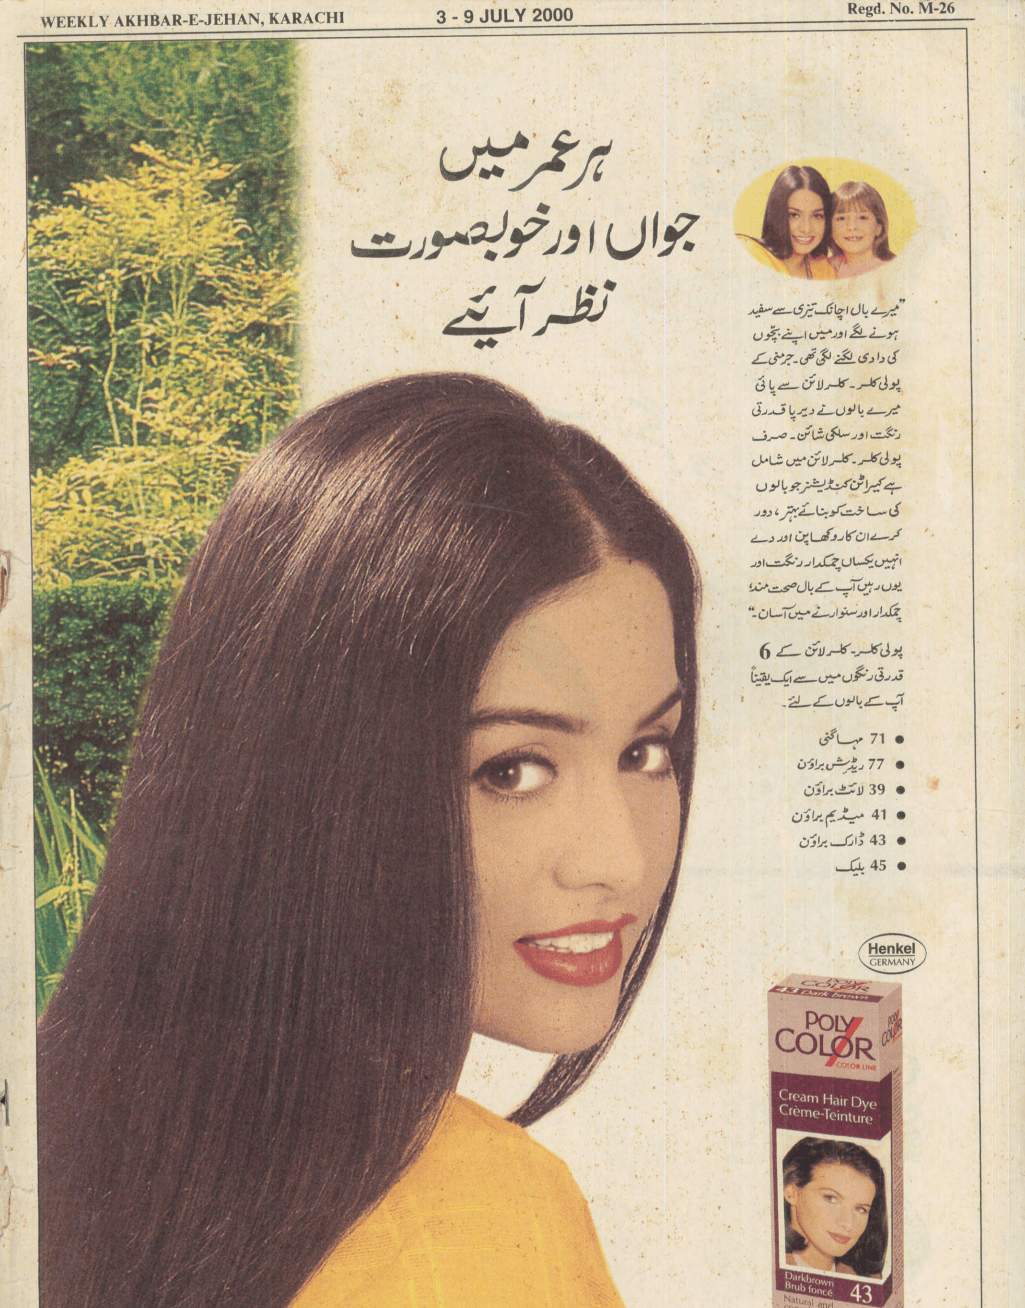 Akhbar-e-Jahan (Jul 3, 2000) - KHAJISTAN™